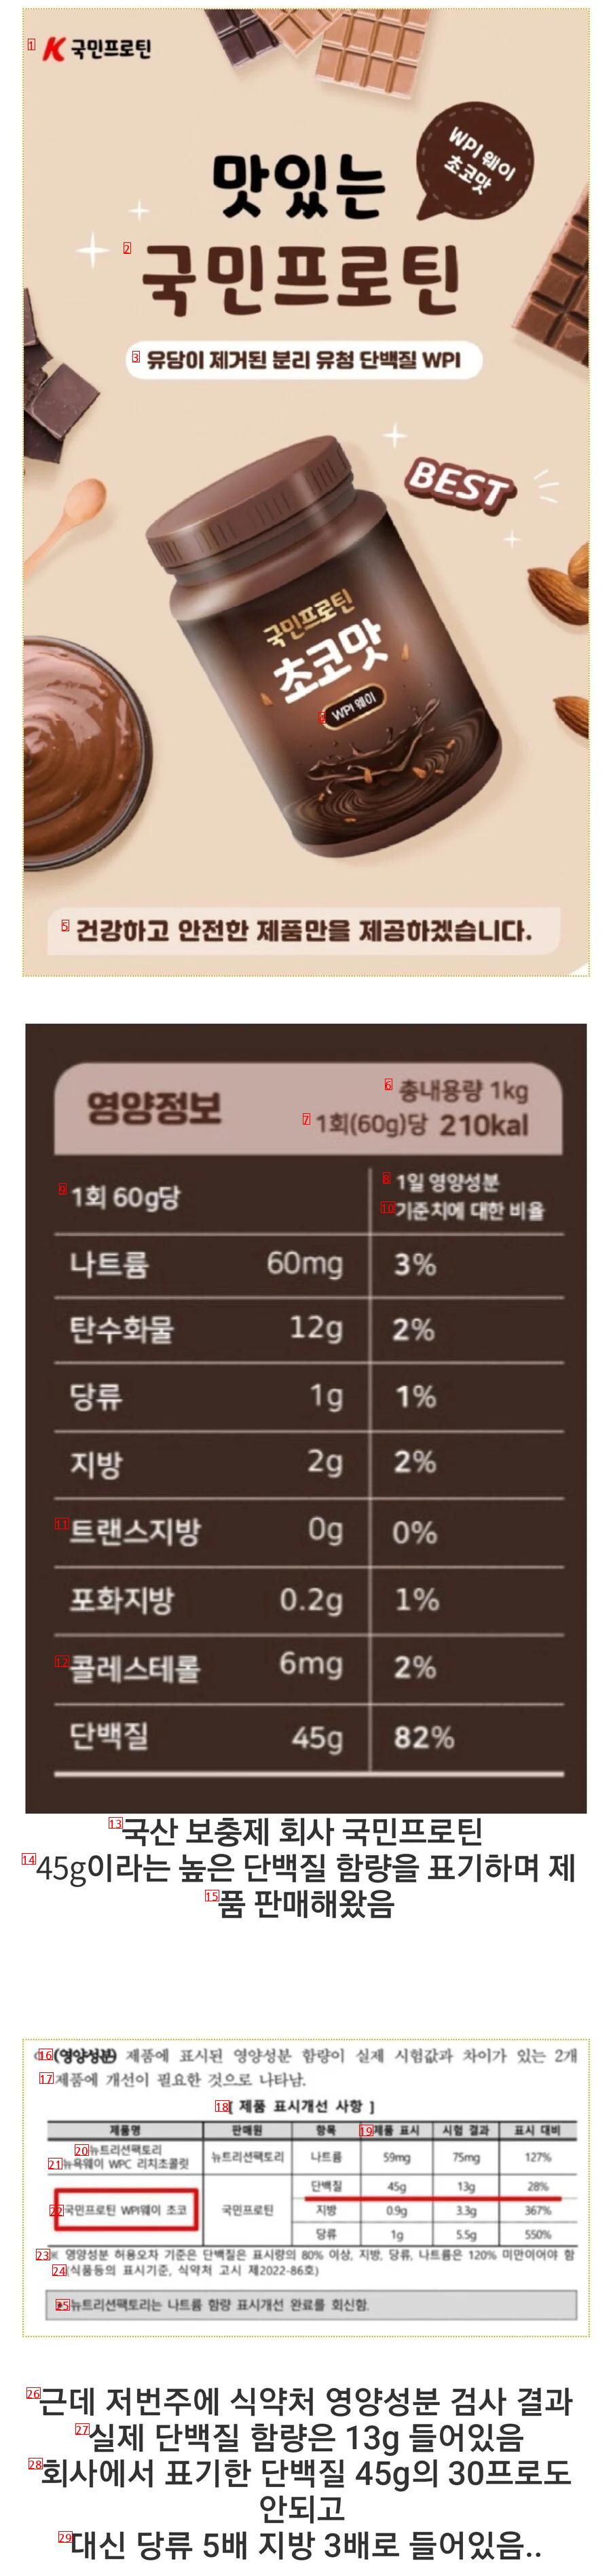 韓国産プロテイン製品衝撃的な食品医薬品安全処の検査結果